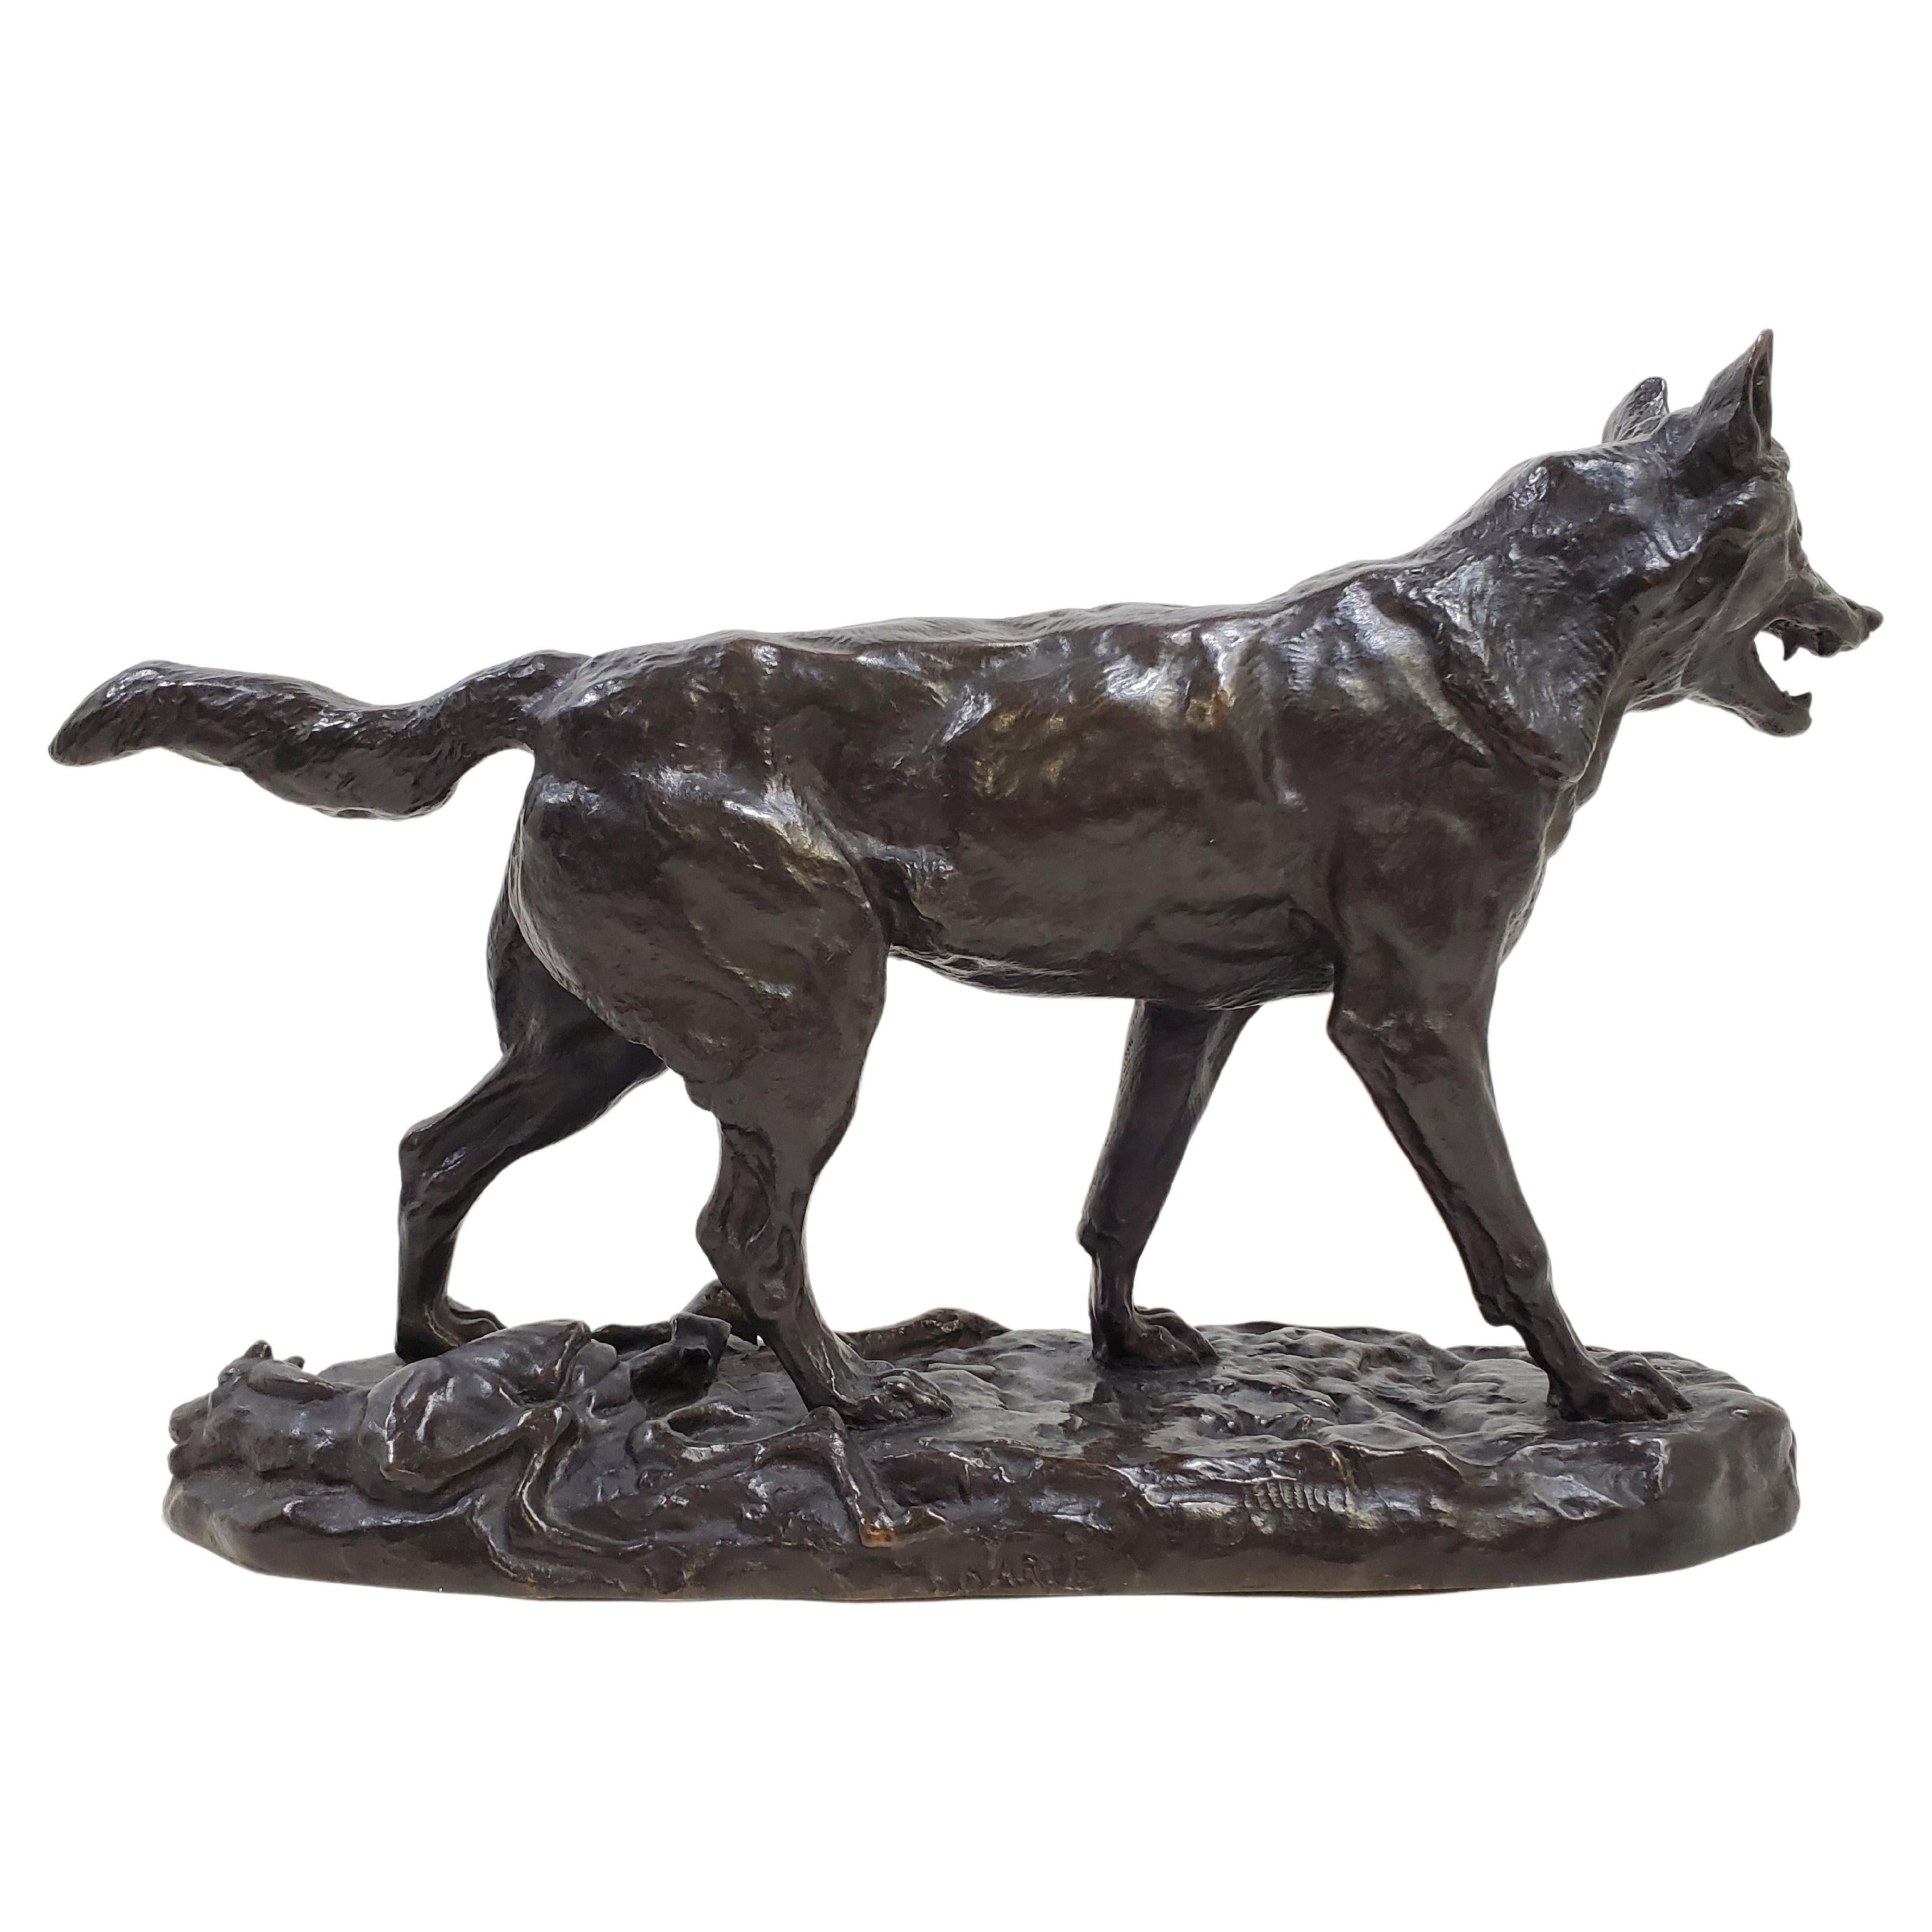 Belle statue originale en bronze du début du 20e siècle représentant un loup qui marche, 